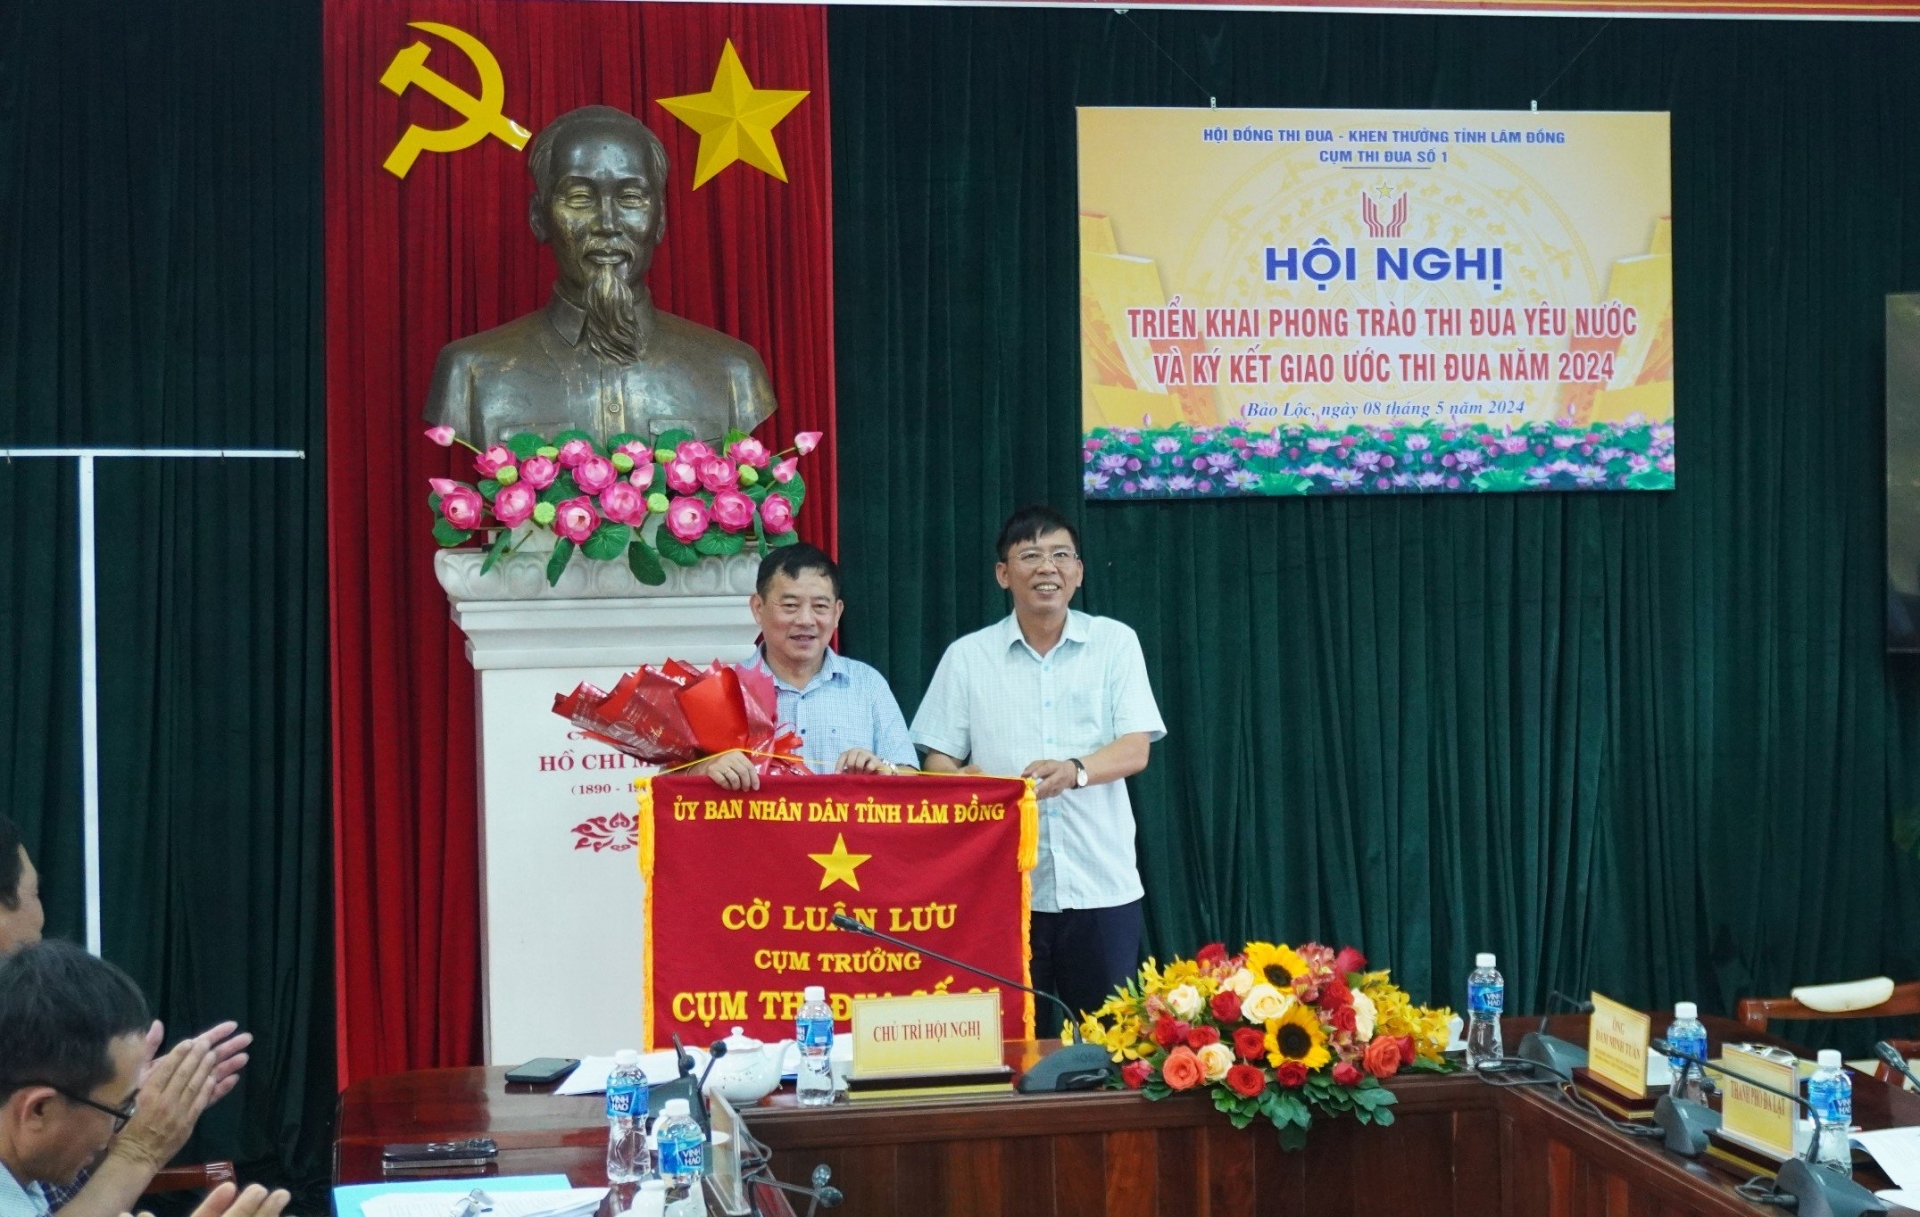 Ông Nguyễn Văn Phương - Chủ tịch UBND TP Bảo Lộc nhận Cờ luân lưu Cụm trưởng năm 2024 từ đại diện UBND huyện Di Linh